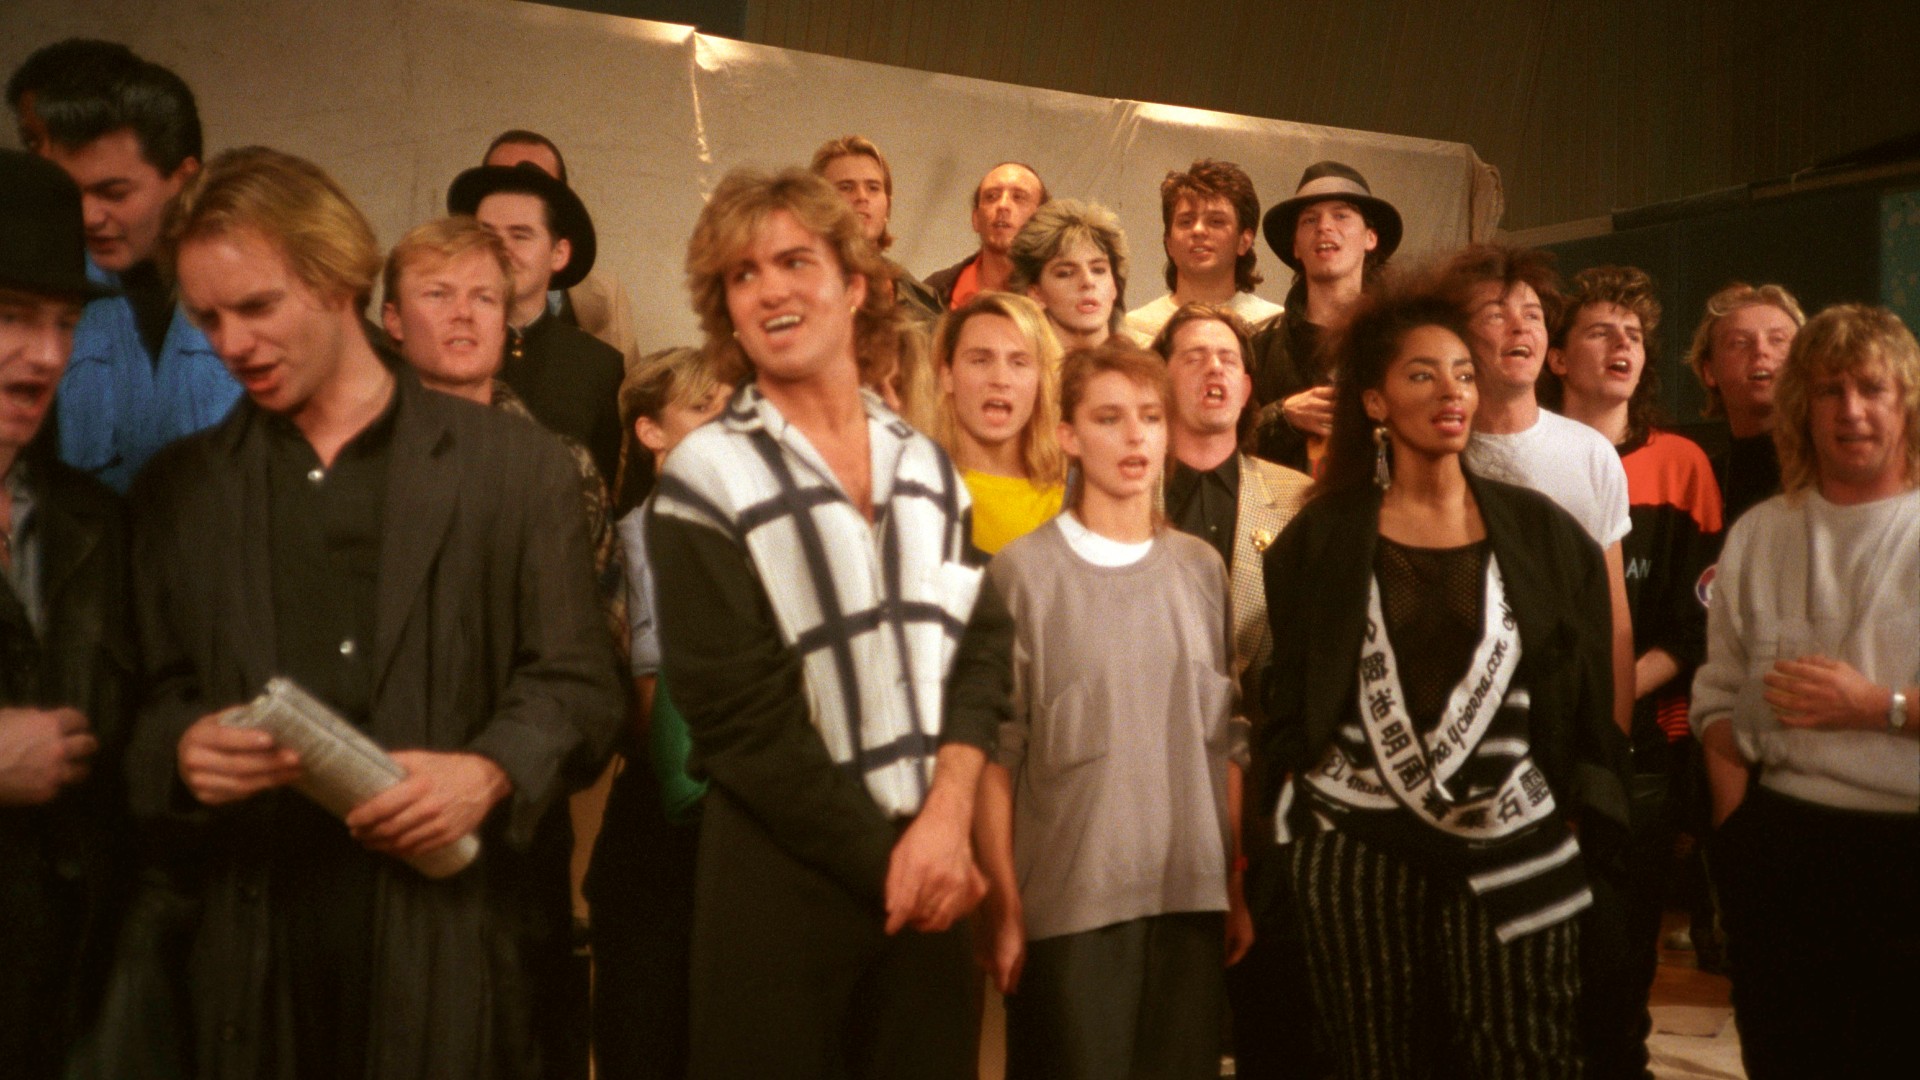 Band Aid 1984 kliprészlet